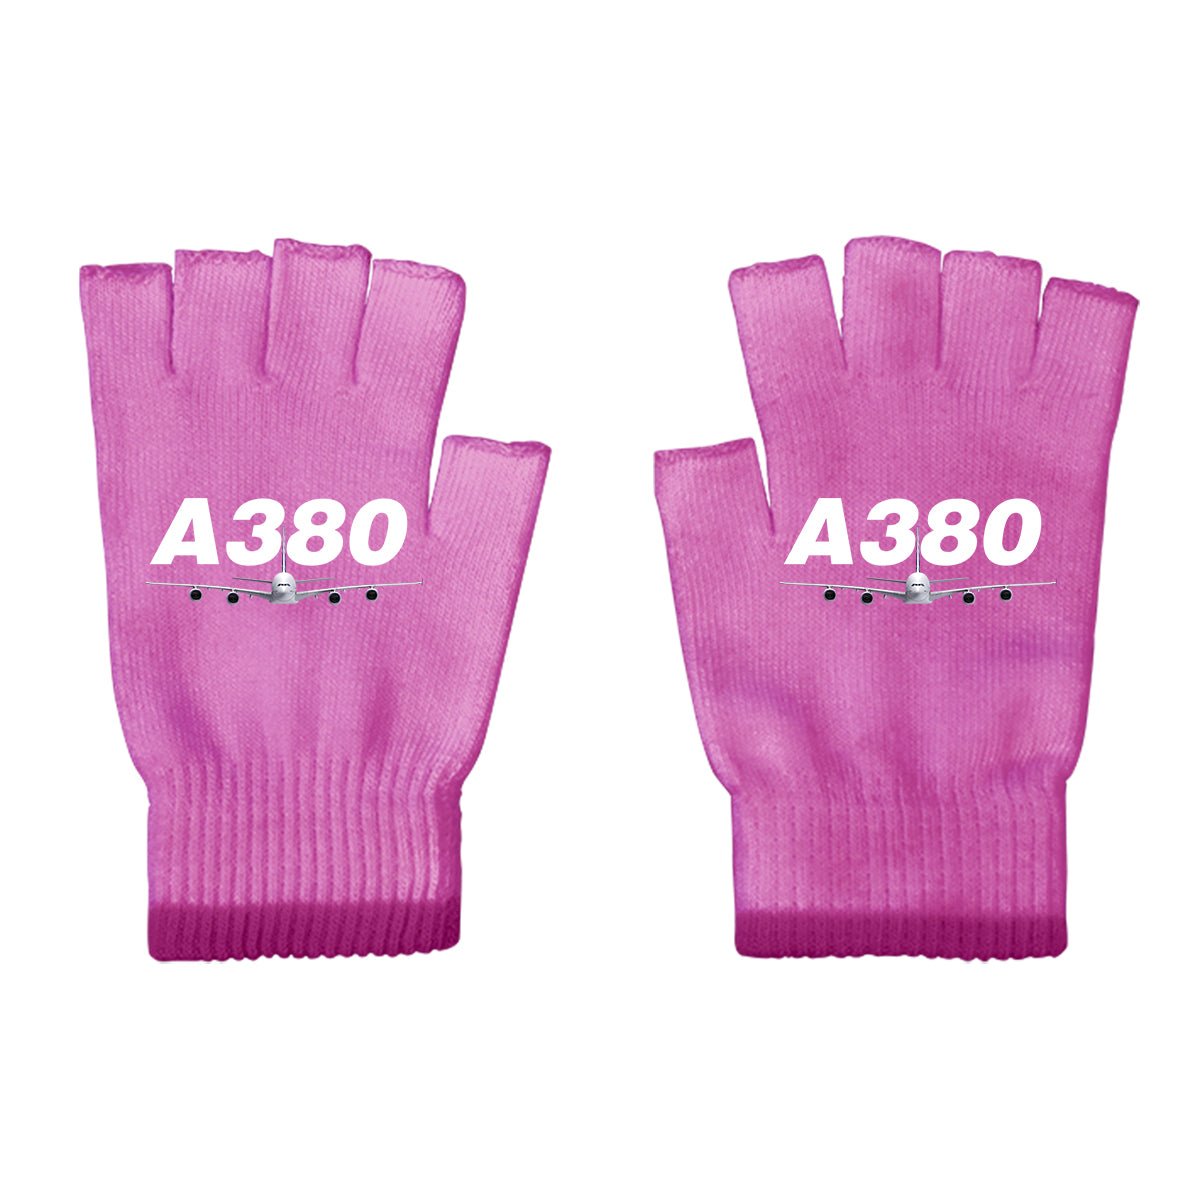 Super Airbus A380 Designed Cut Gloves